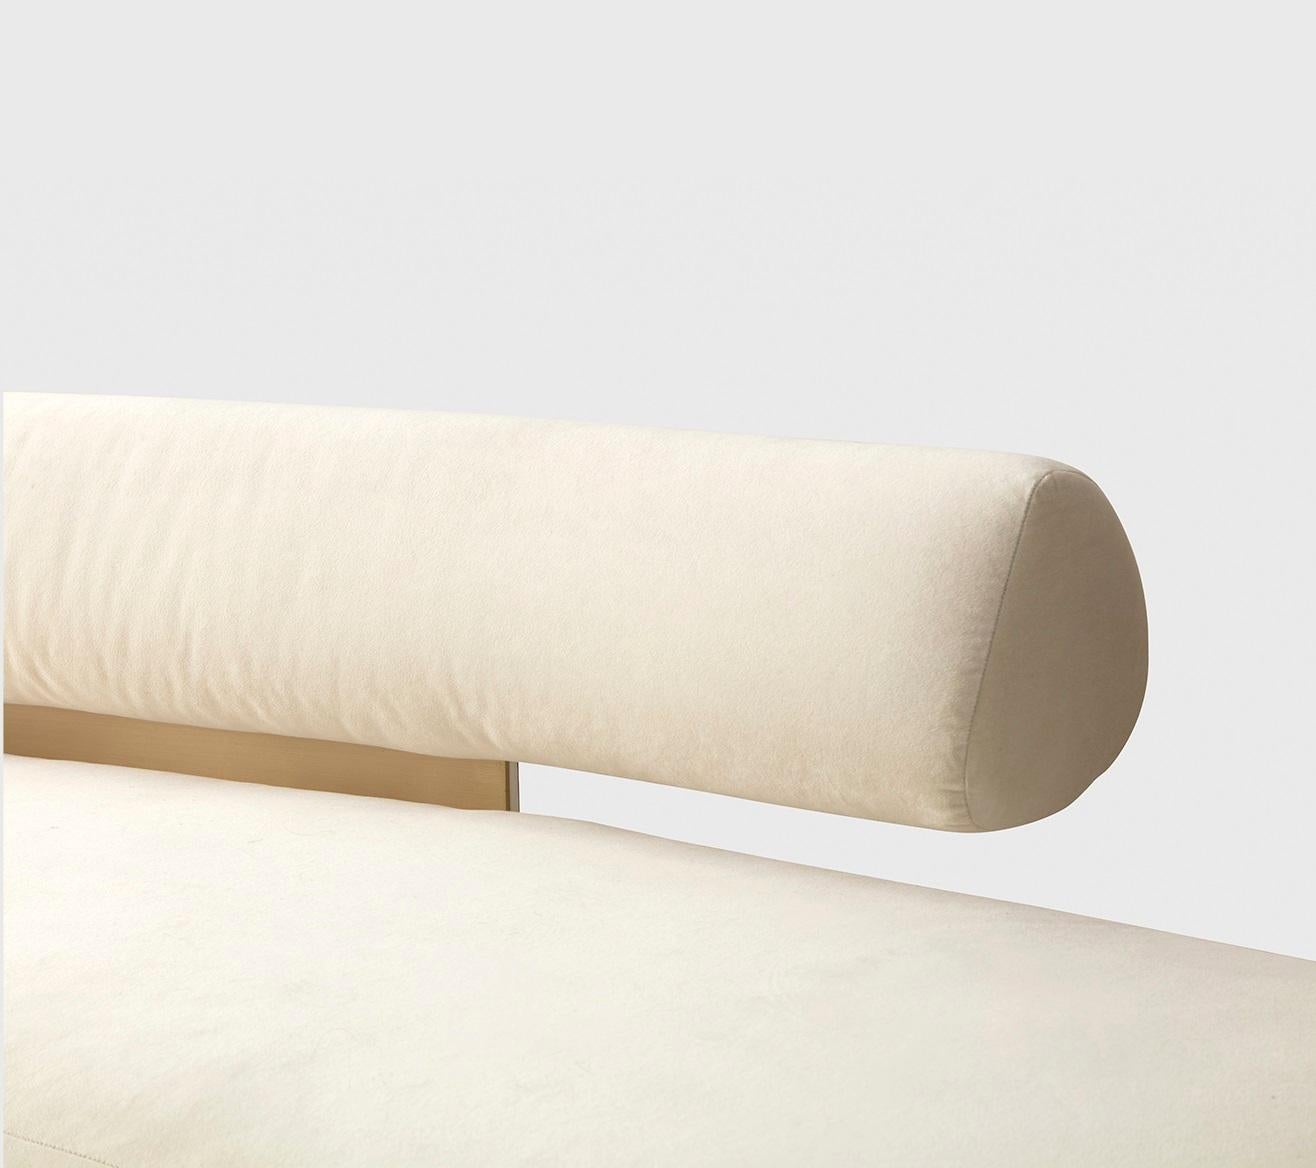 Fabric Beluga Curvo Sofa by Atra Design